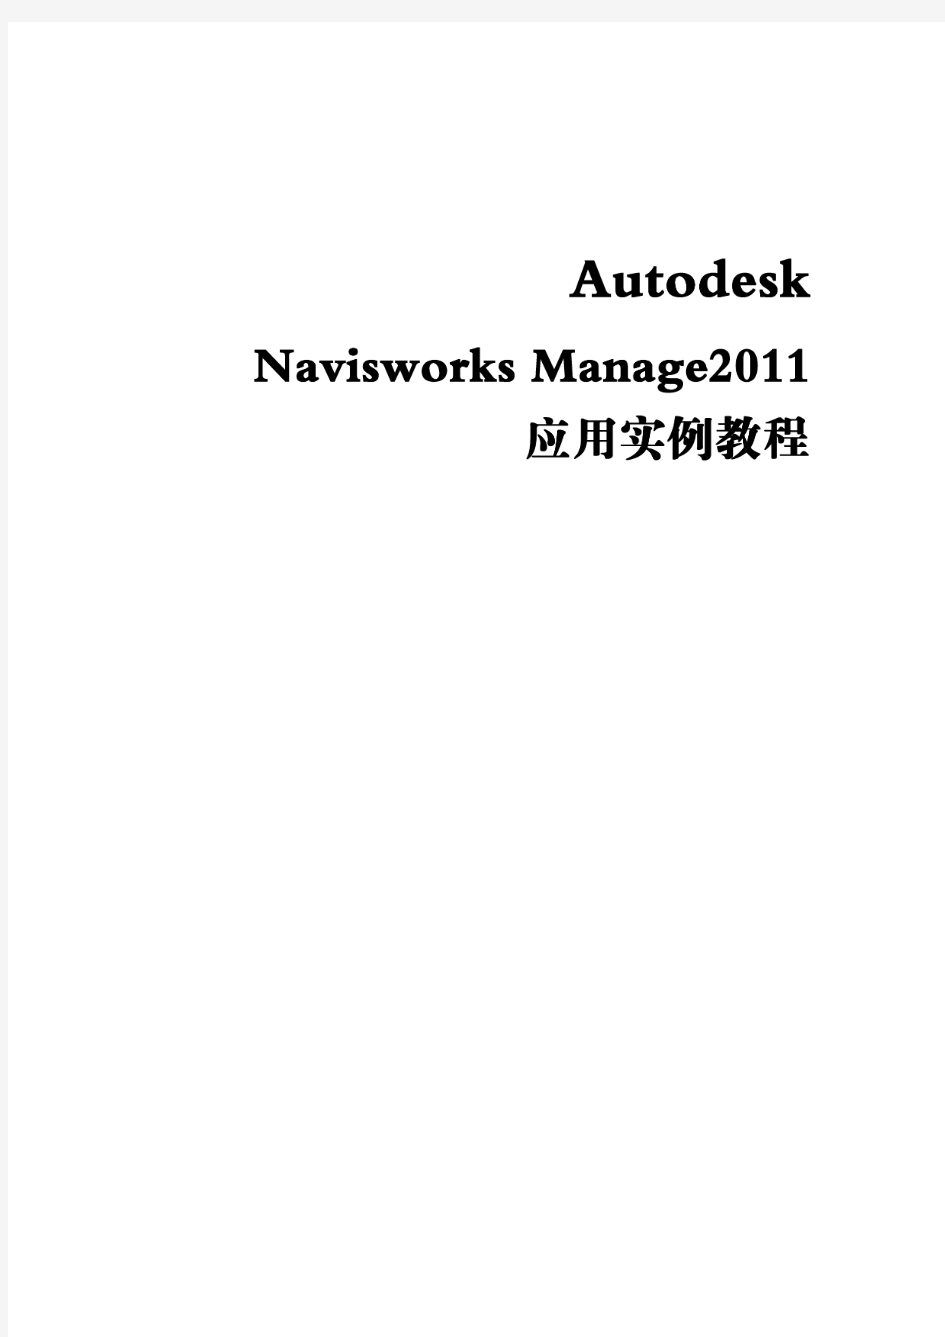 NavisworksManage应用实例操作教程